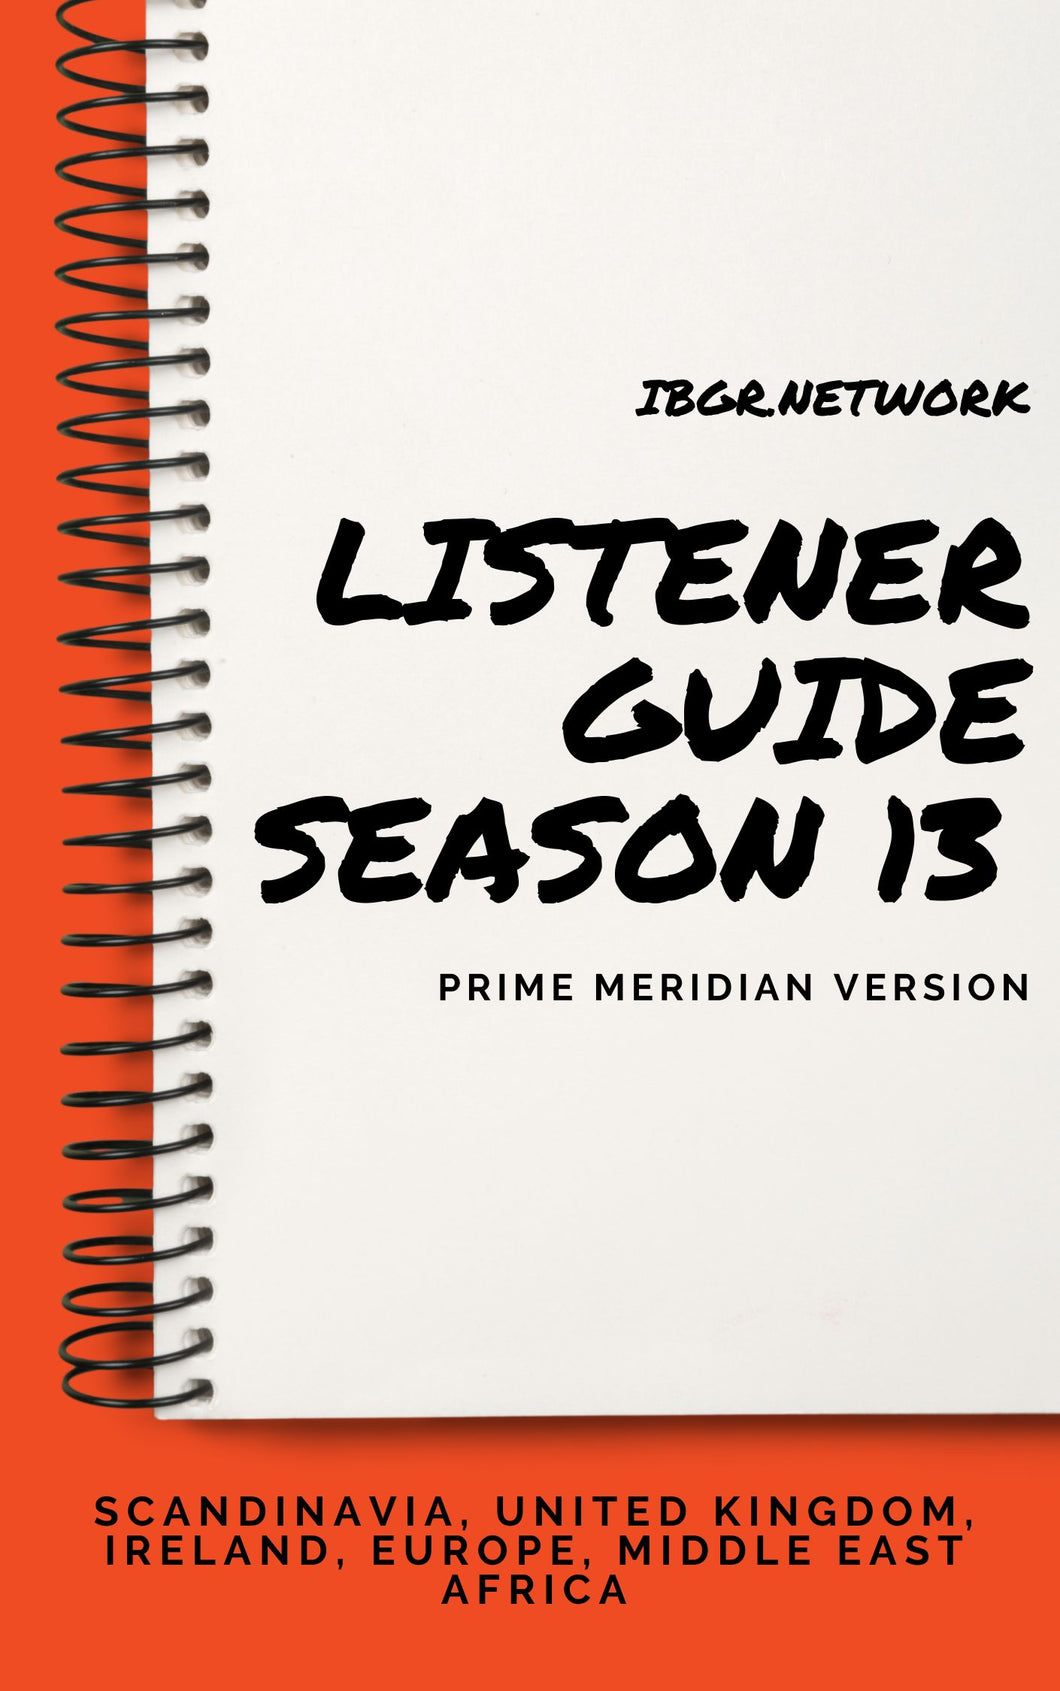 [EBOOK] Season 13 Listener Guide 13.3 - Prime Meridian Version